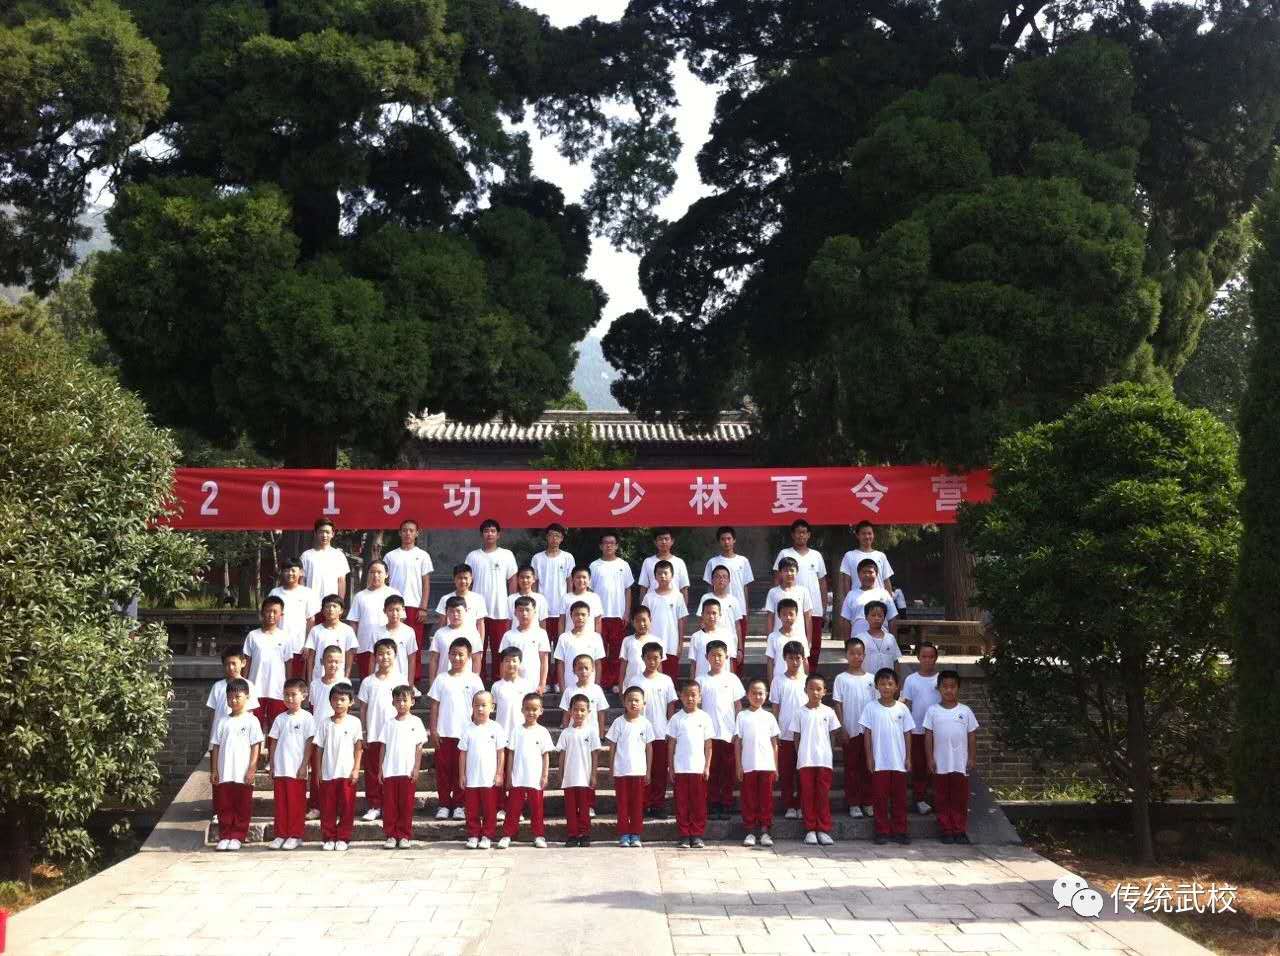 嵩山少林寺武术学校的学生在训练